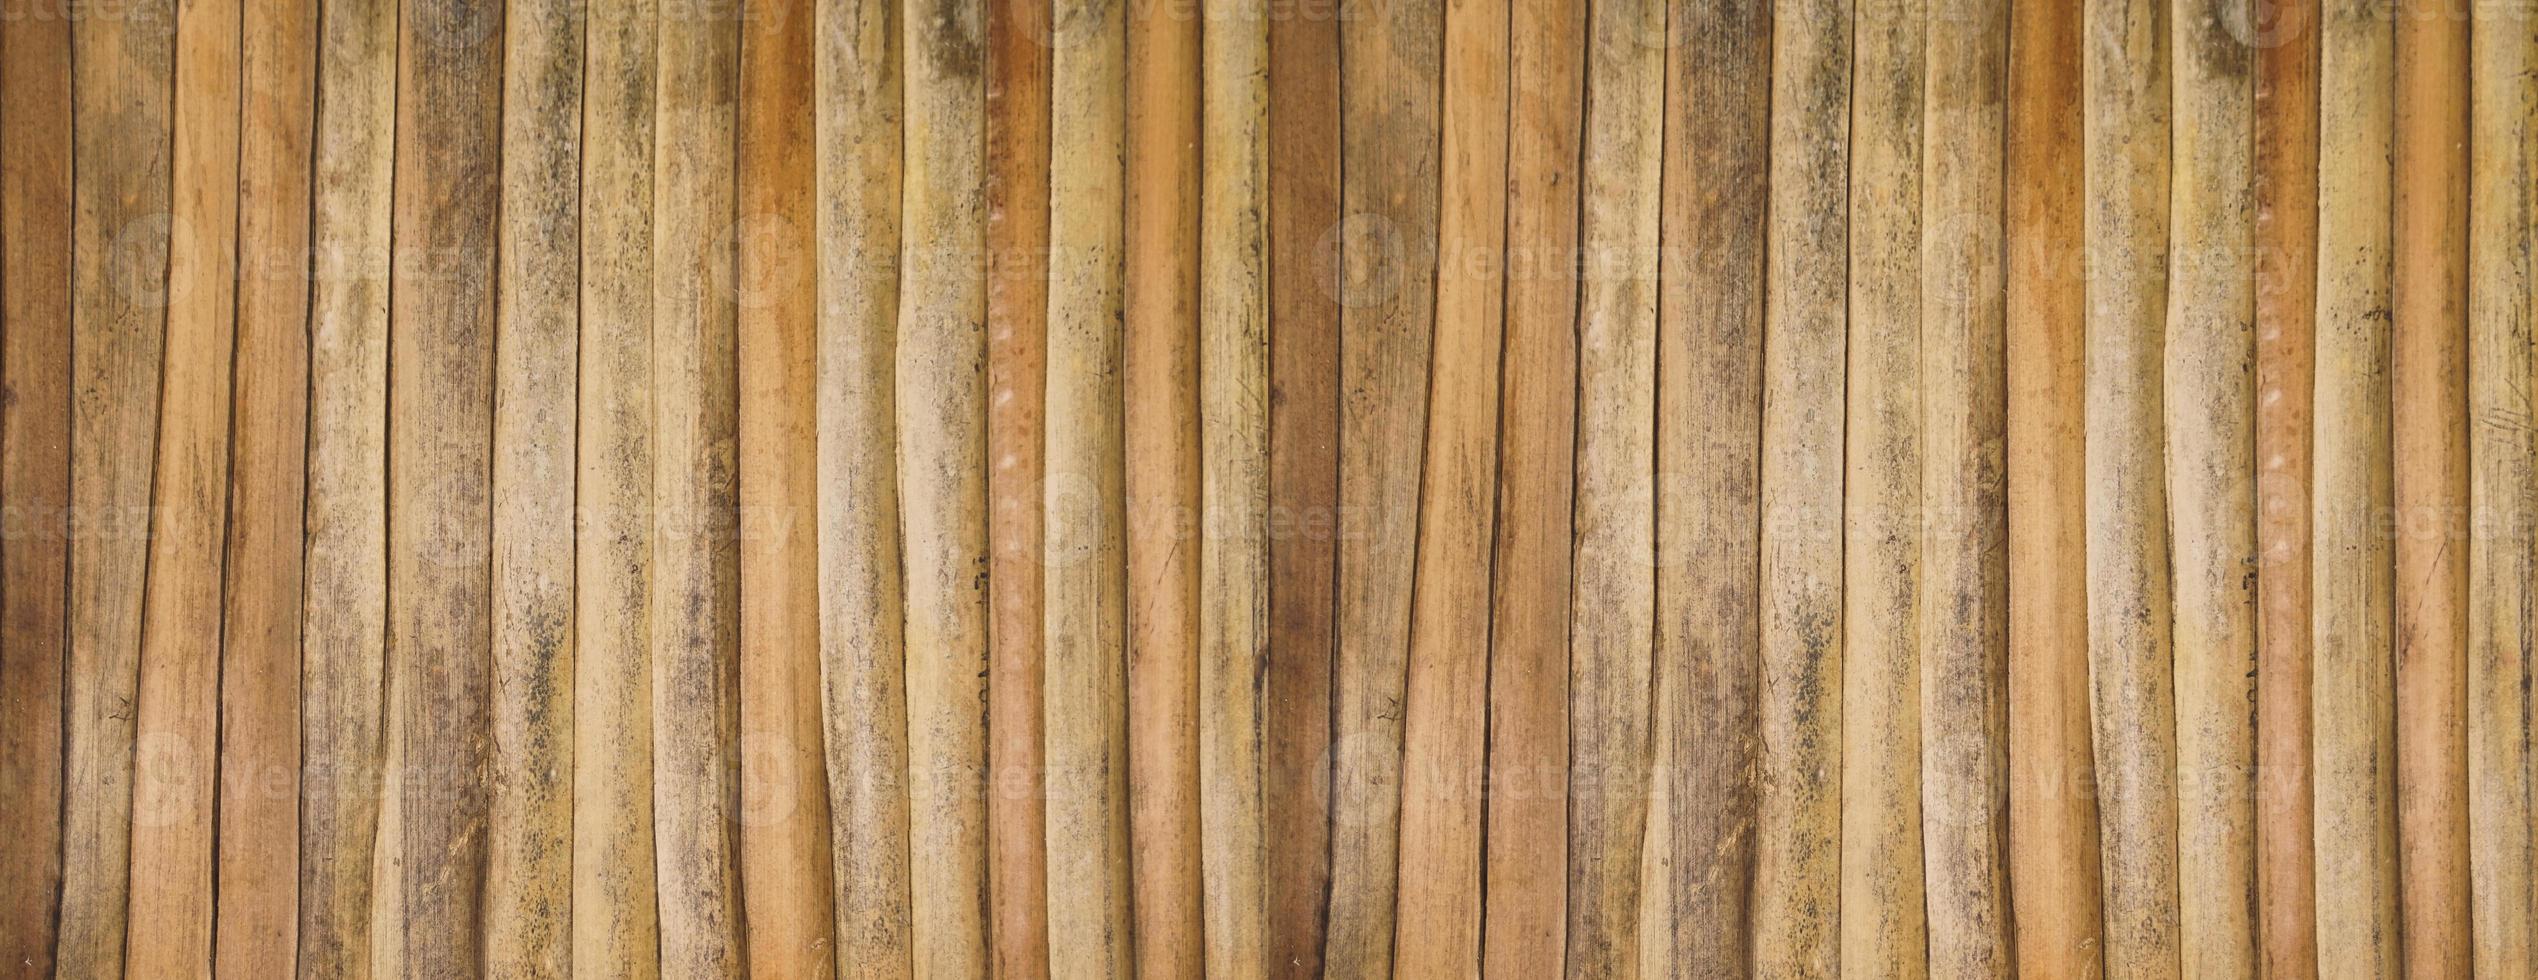 das Muster des Bambusbeschaffenheitshintergrundes. foto